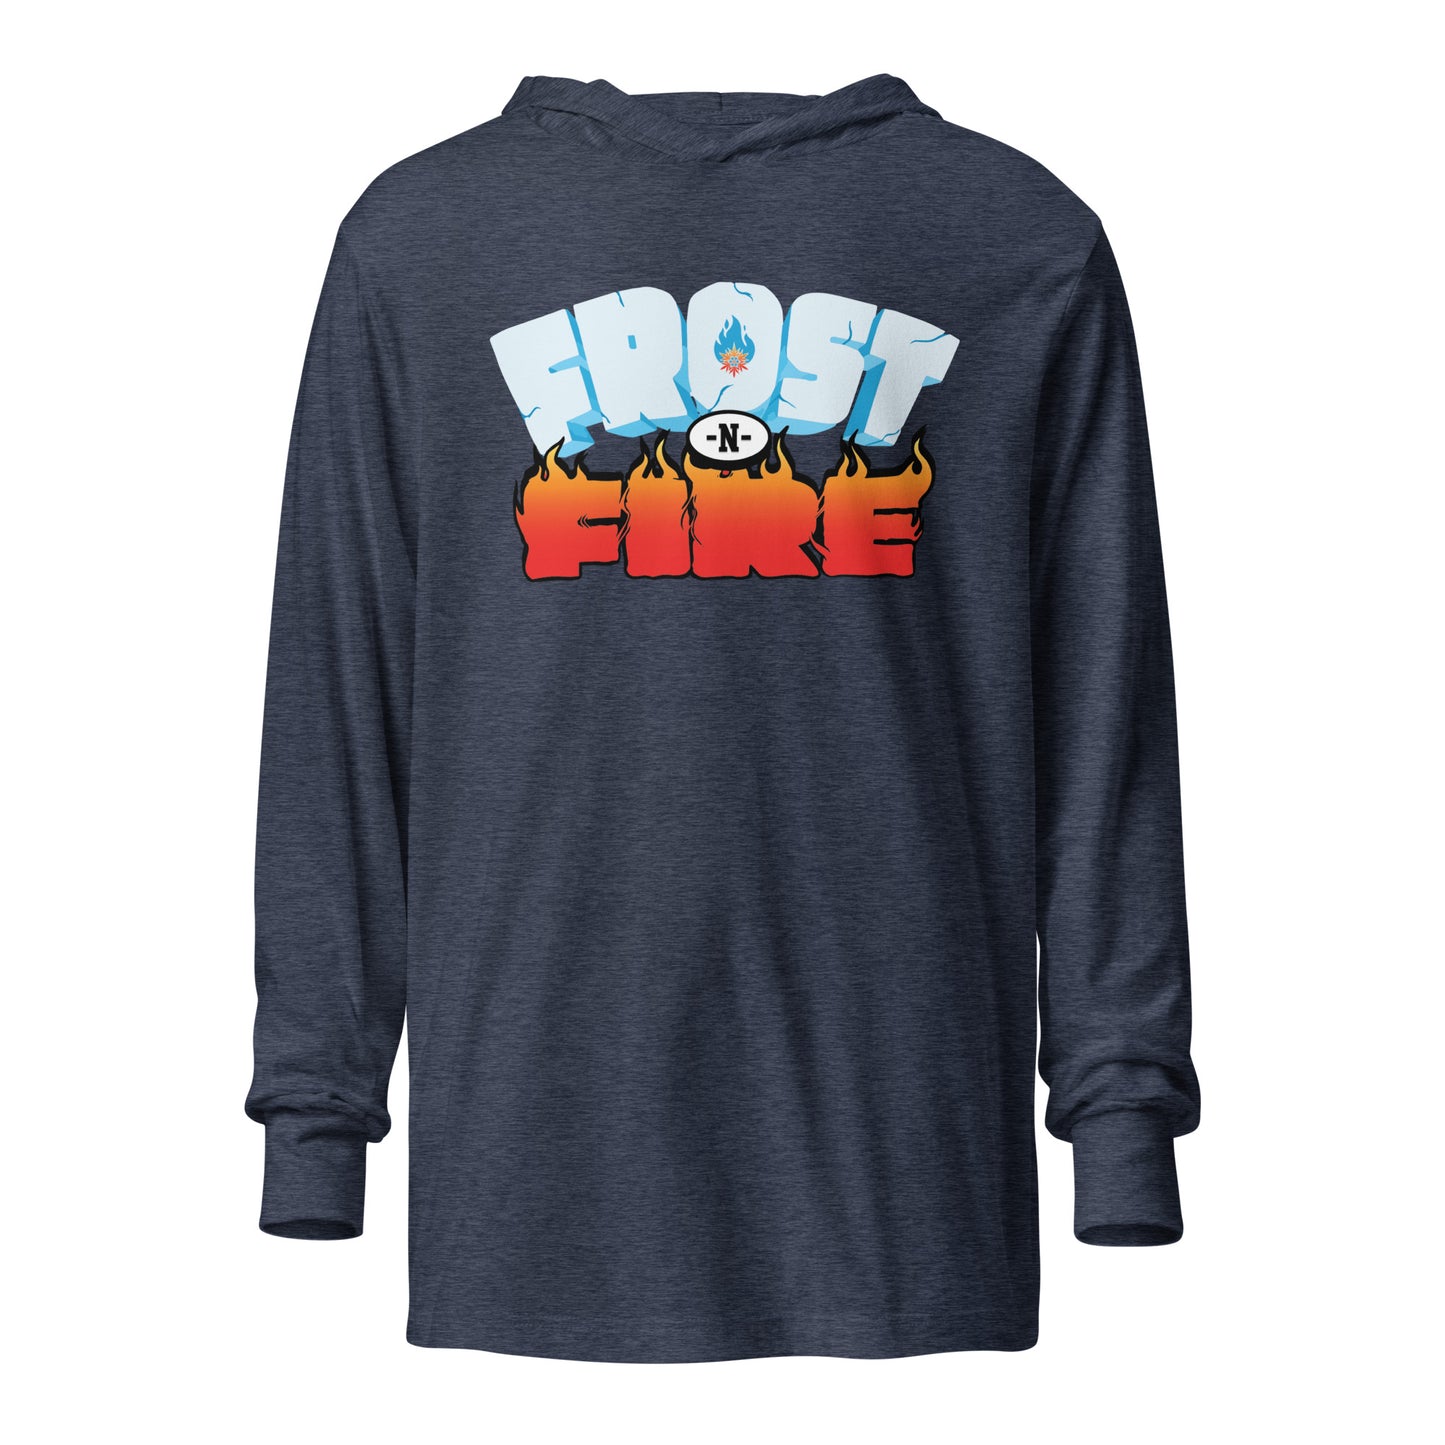 FrostnFire Hooded Long Sleeve